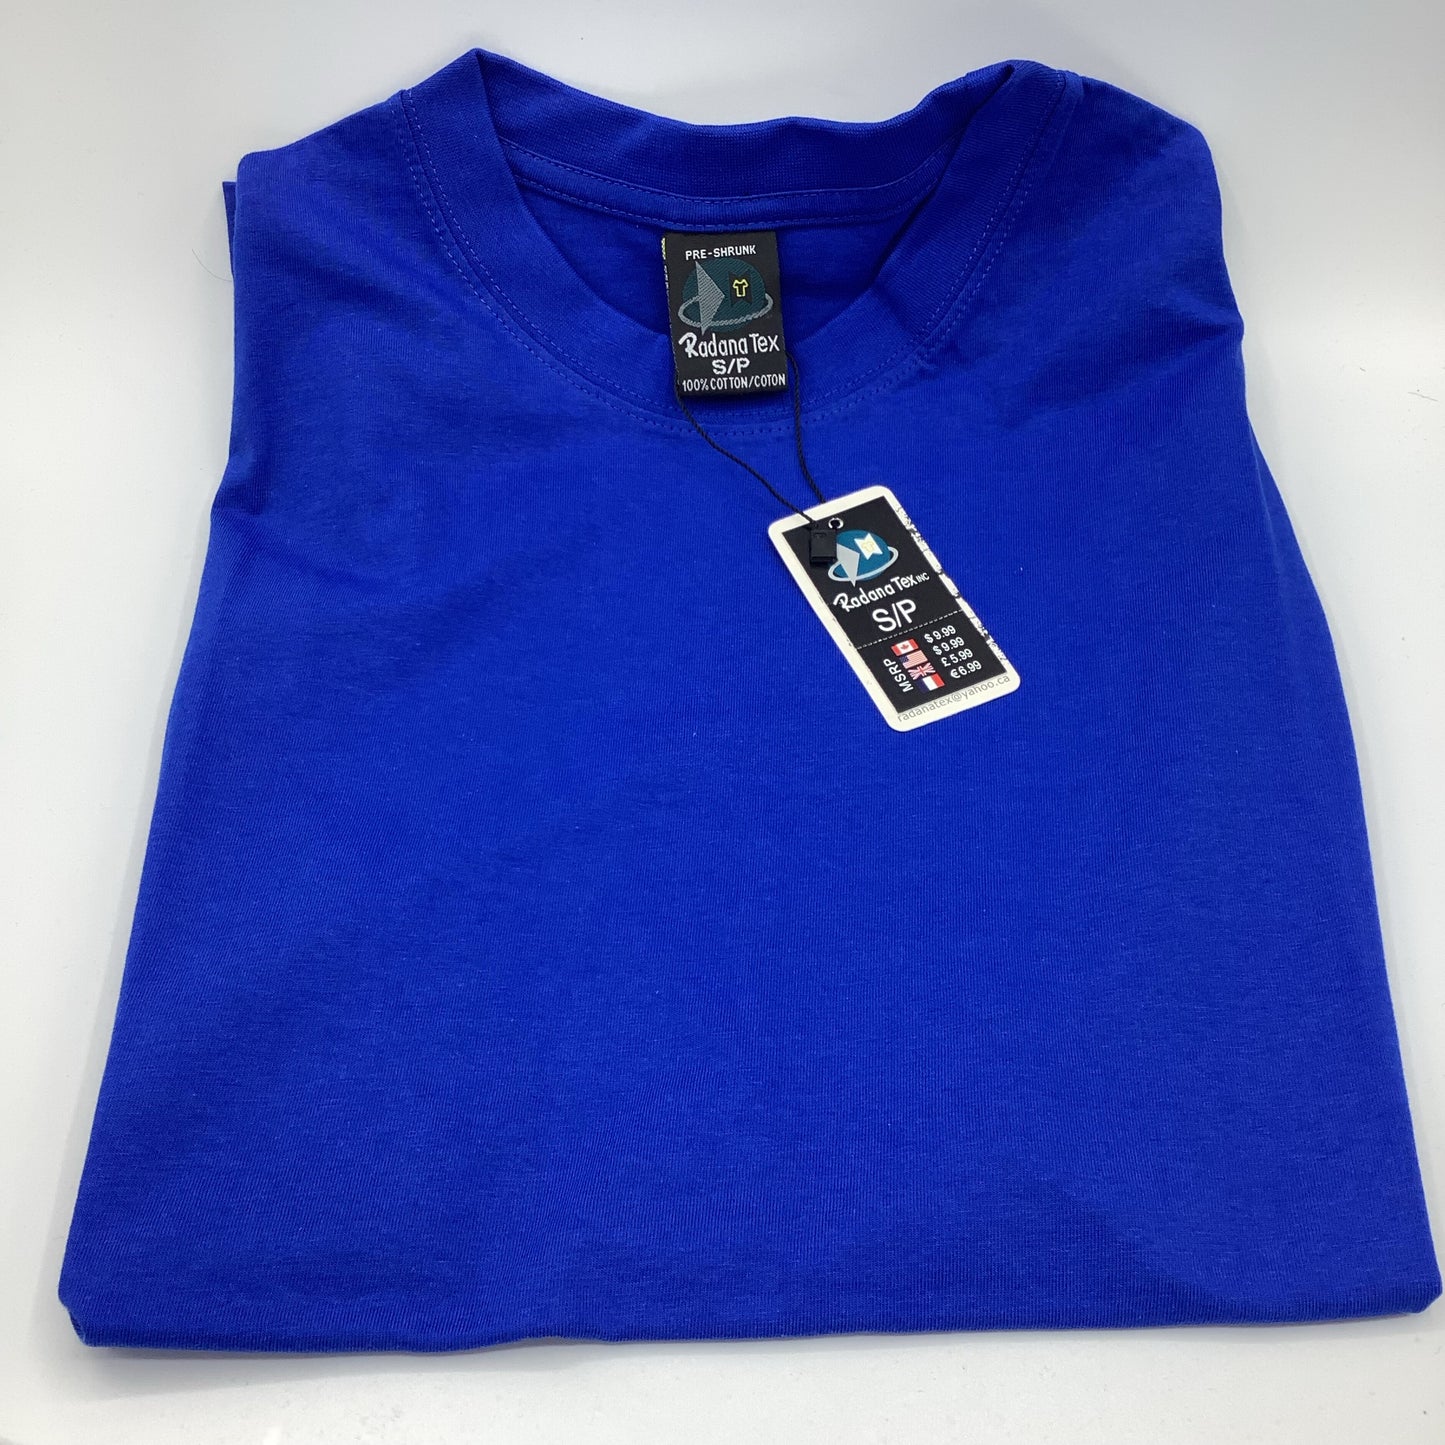 RADANA royal blue T-shirt